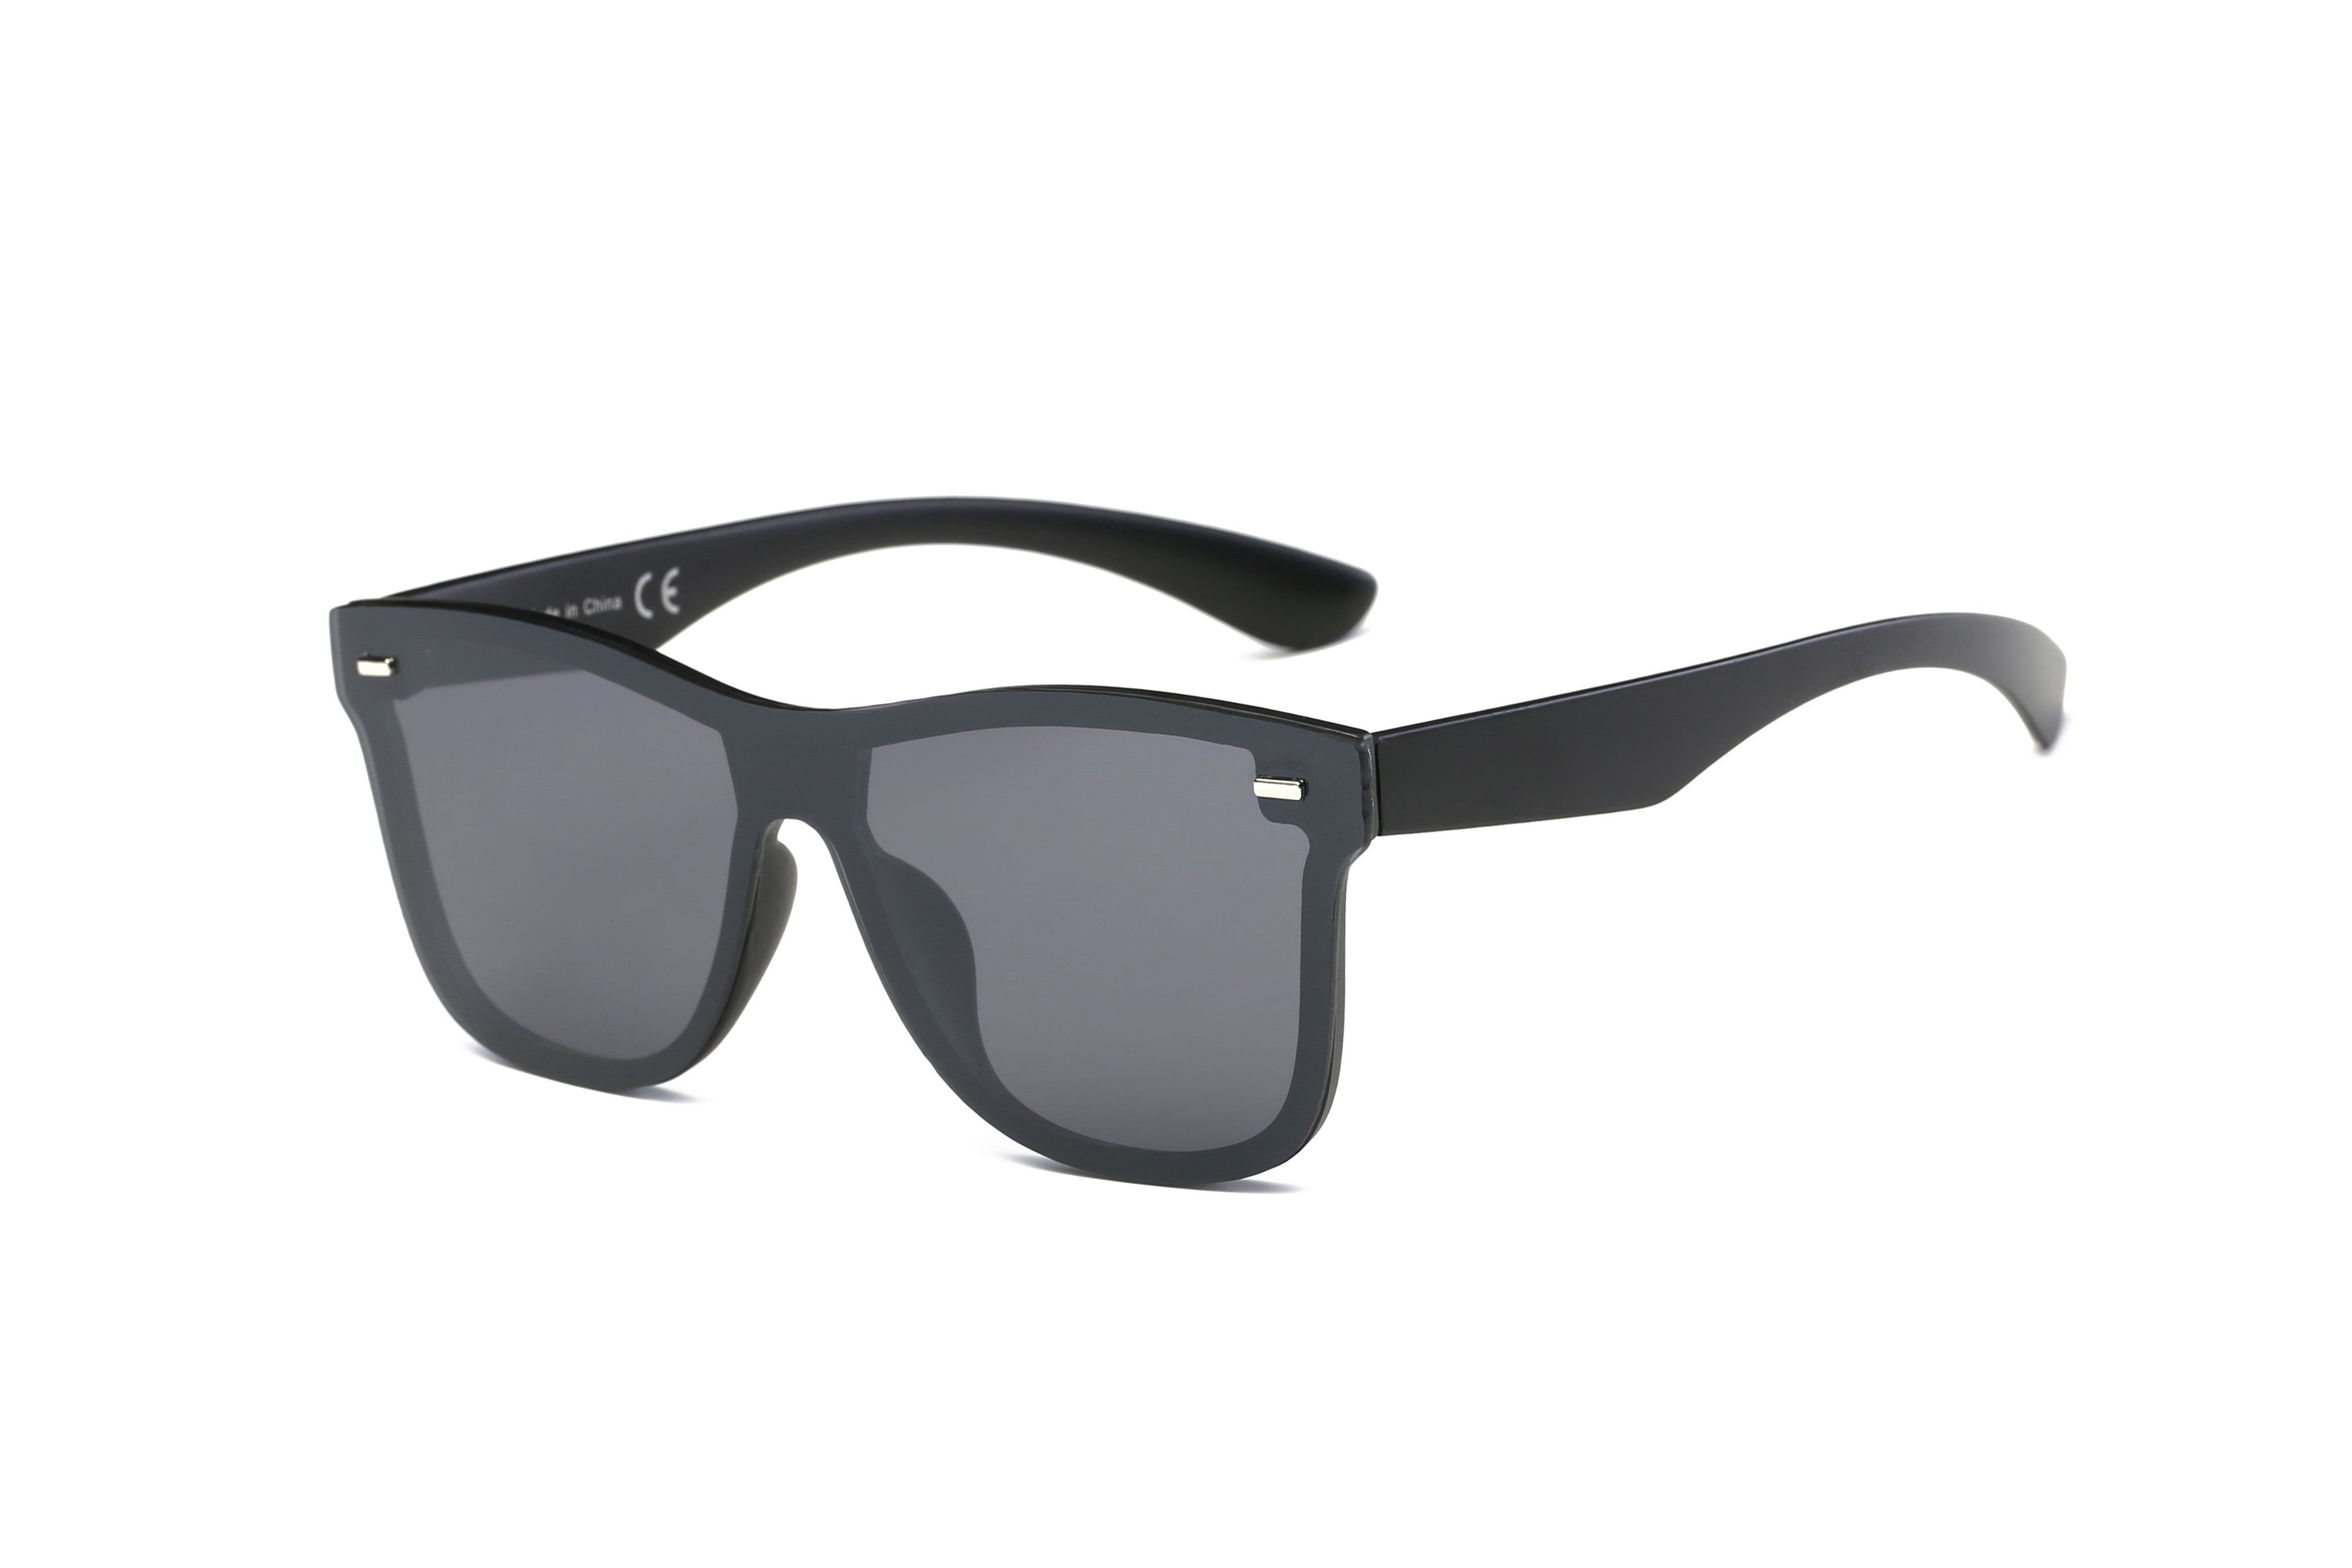 S2010 - Retro Square Flat Top Mirrored Fashion SUNGLASSES Black